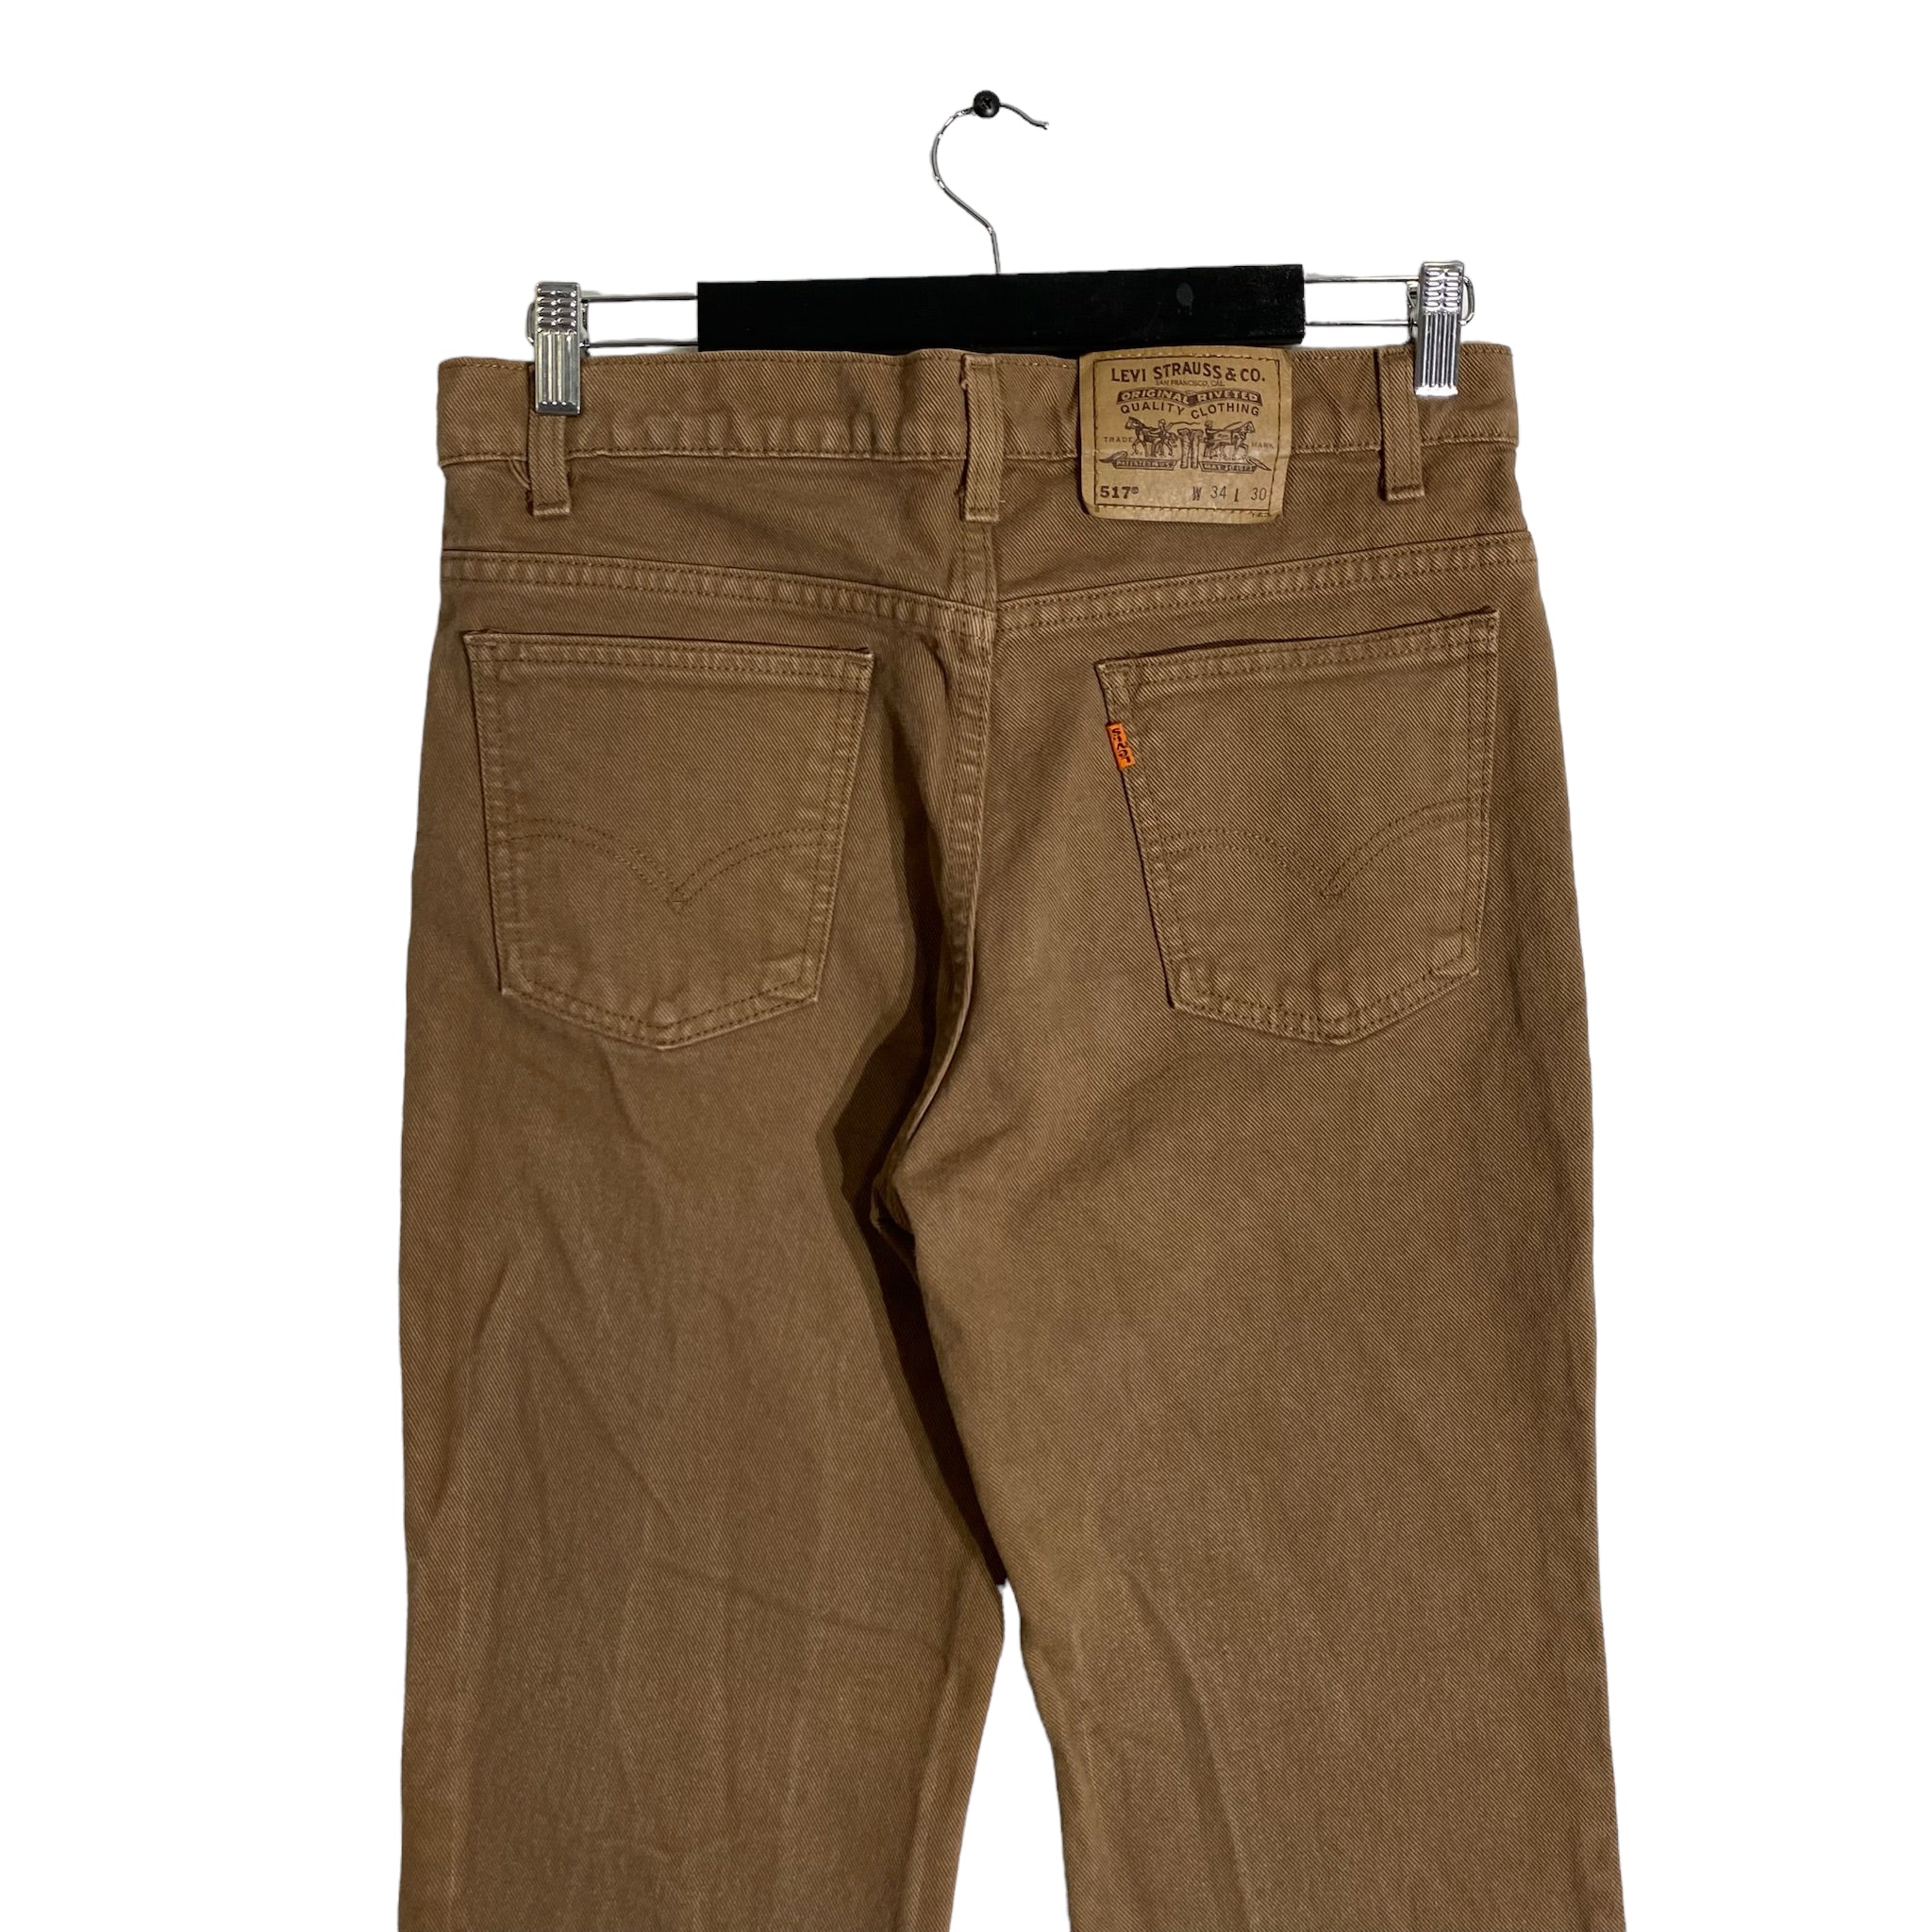 Vintage Levi's 517 Orange Tab Jeans